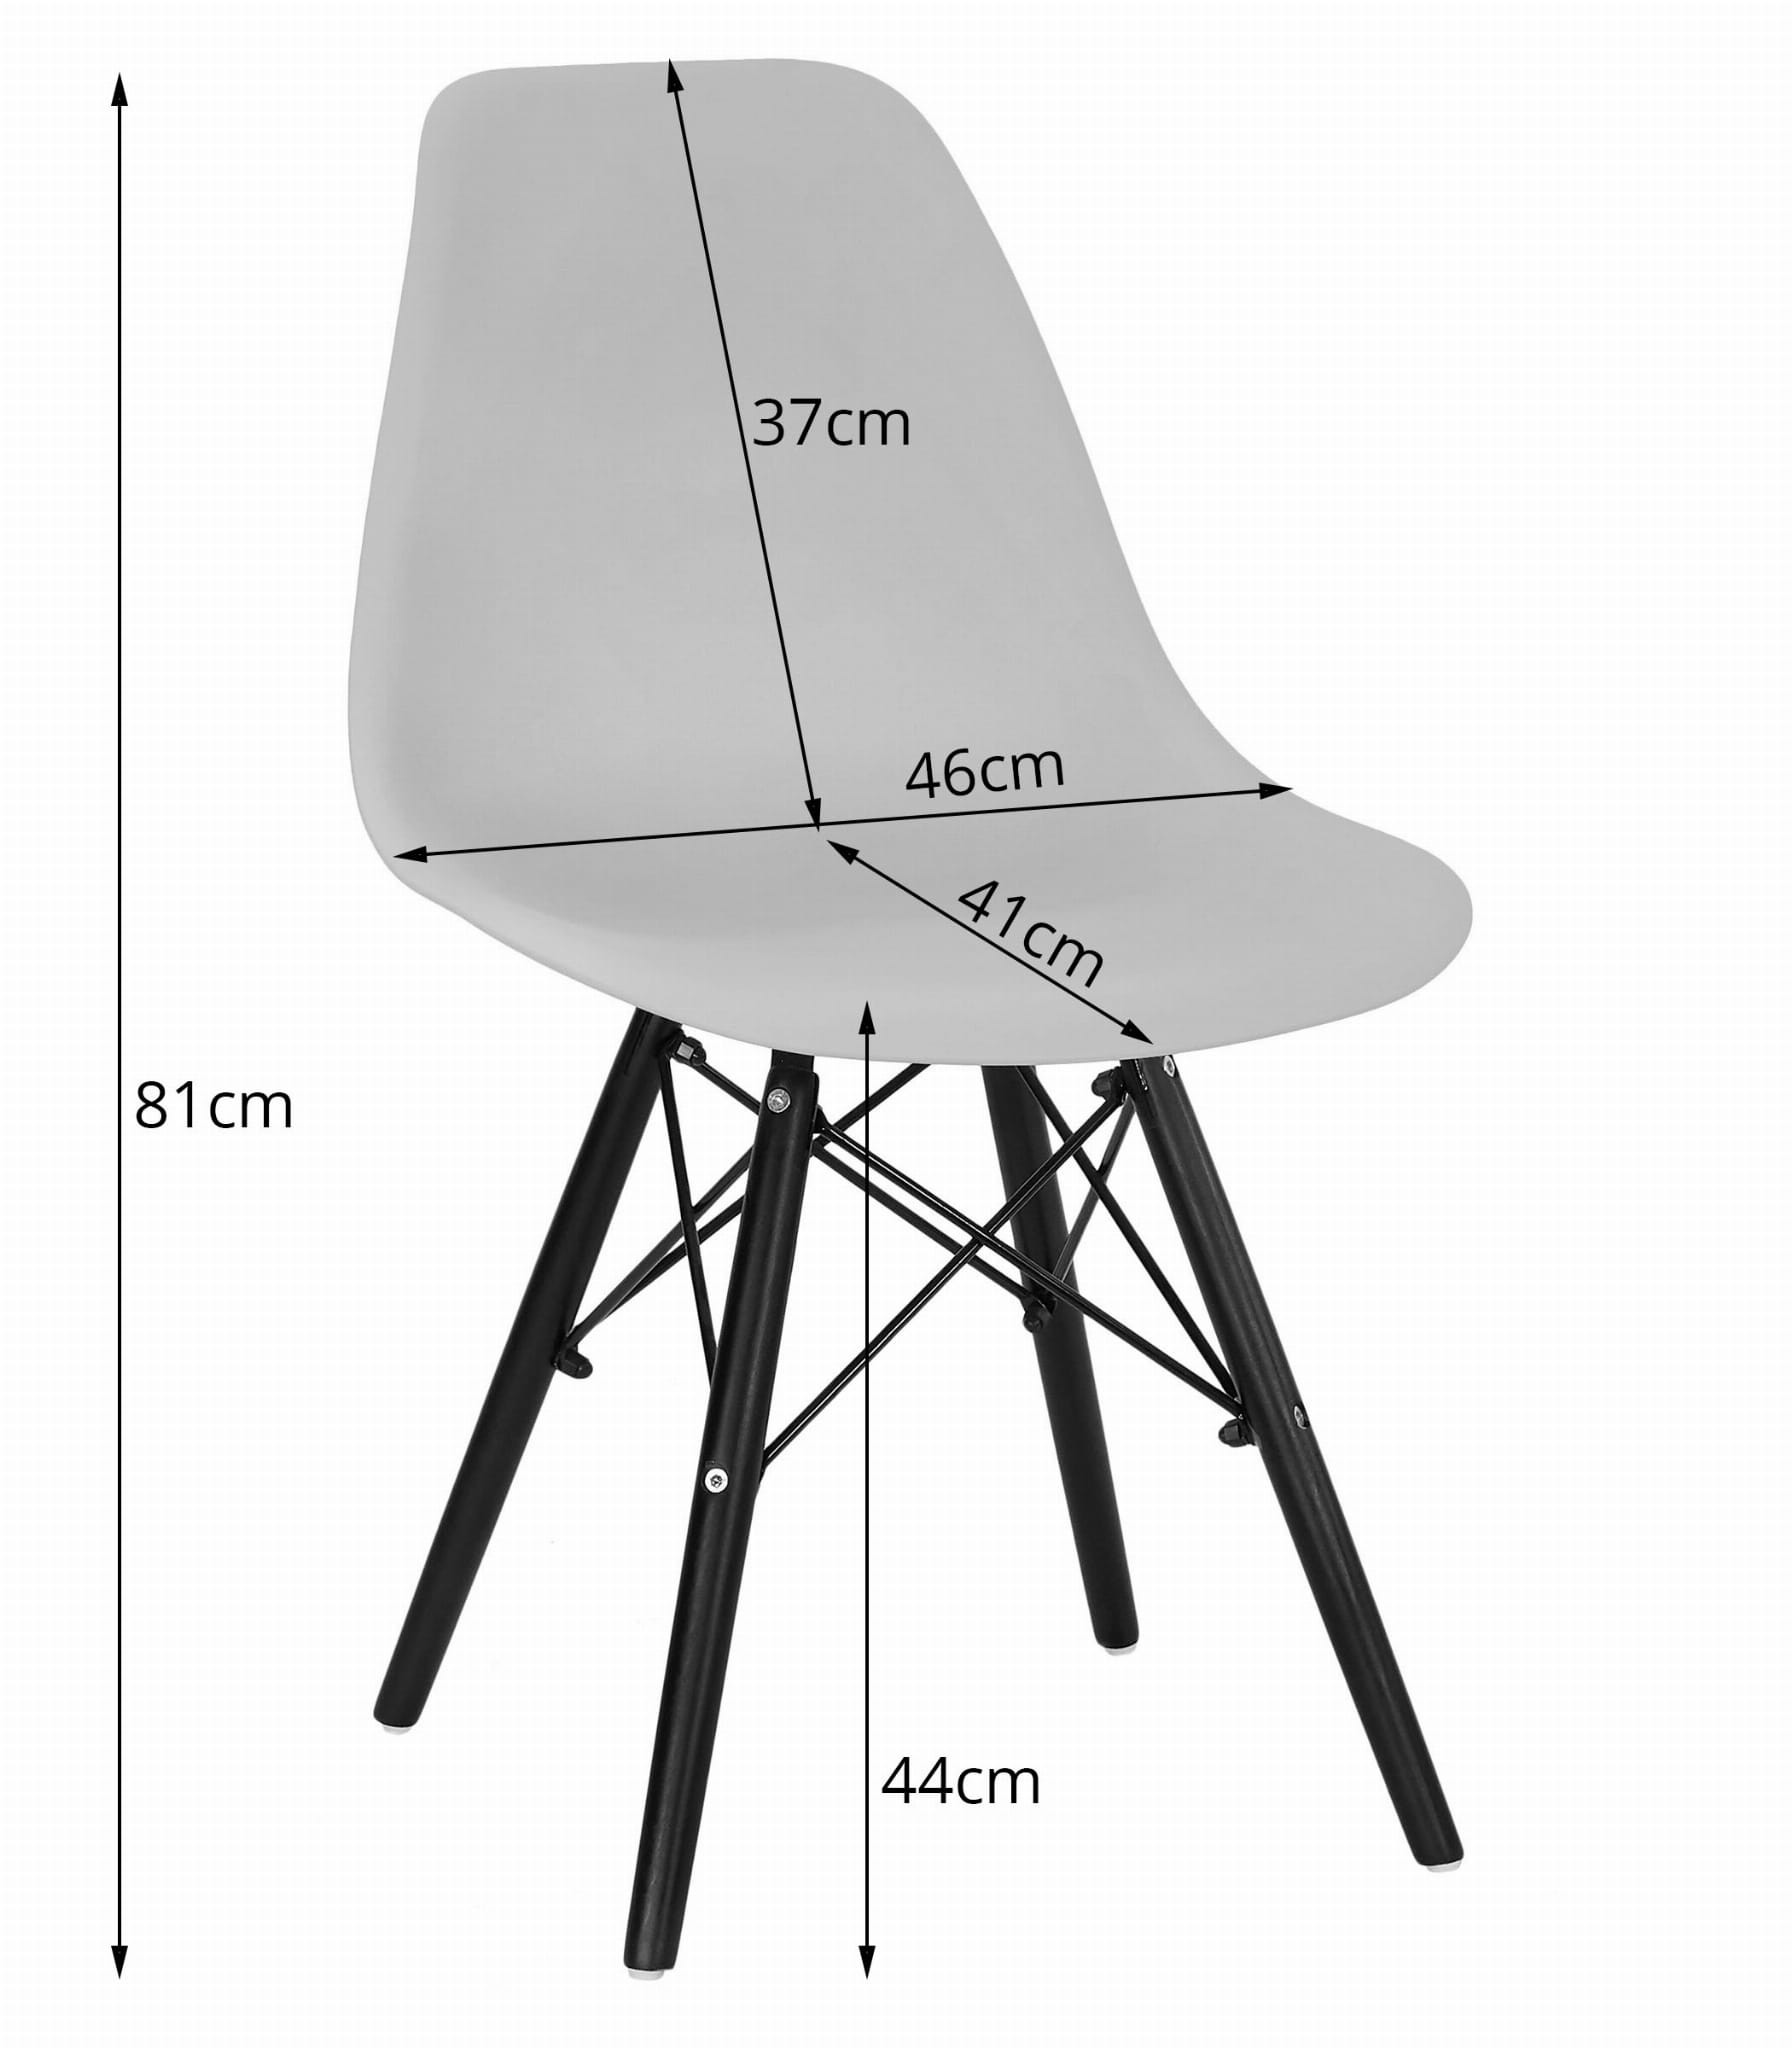 Jedálenská stolička OSAKA sivá (hnedé nohy) (1ks)